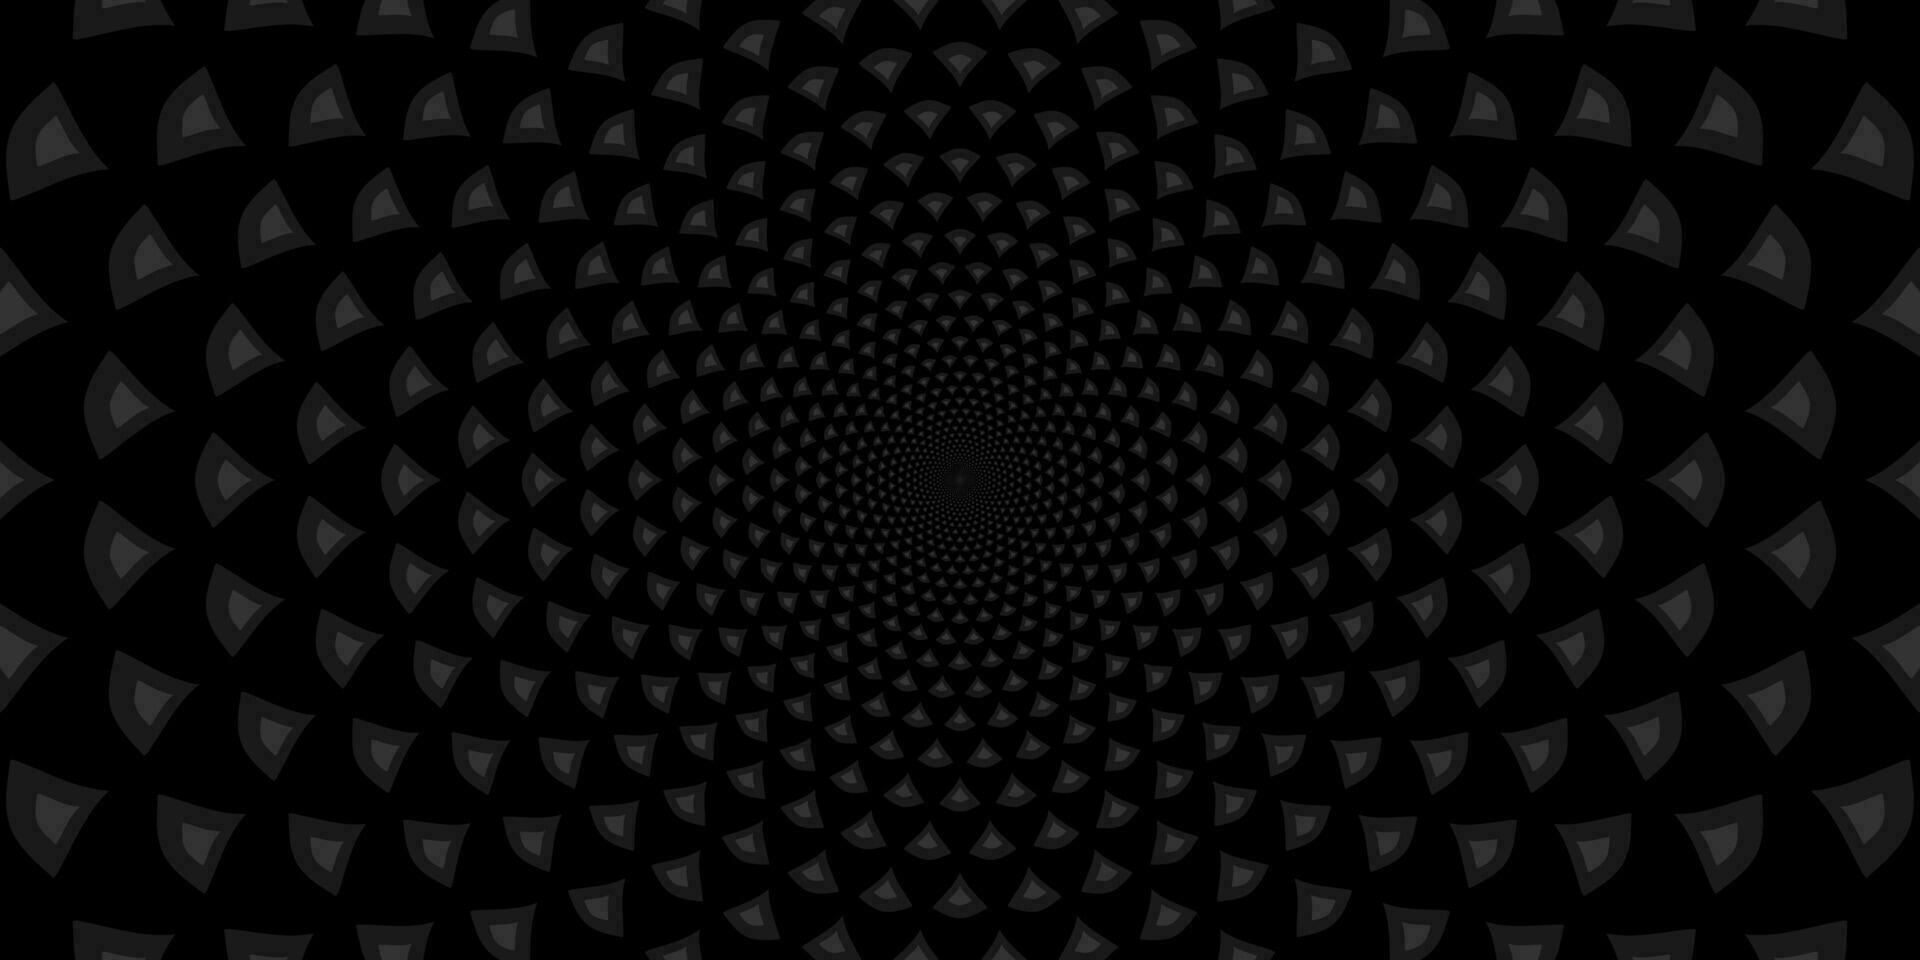 bakgrund med svart och vit trianglar. abstrakt svart tunnel. vektor illustration.